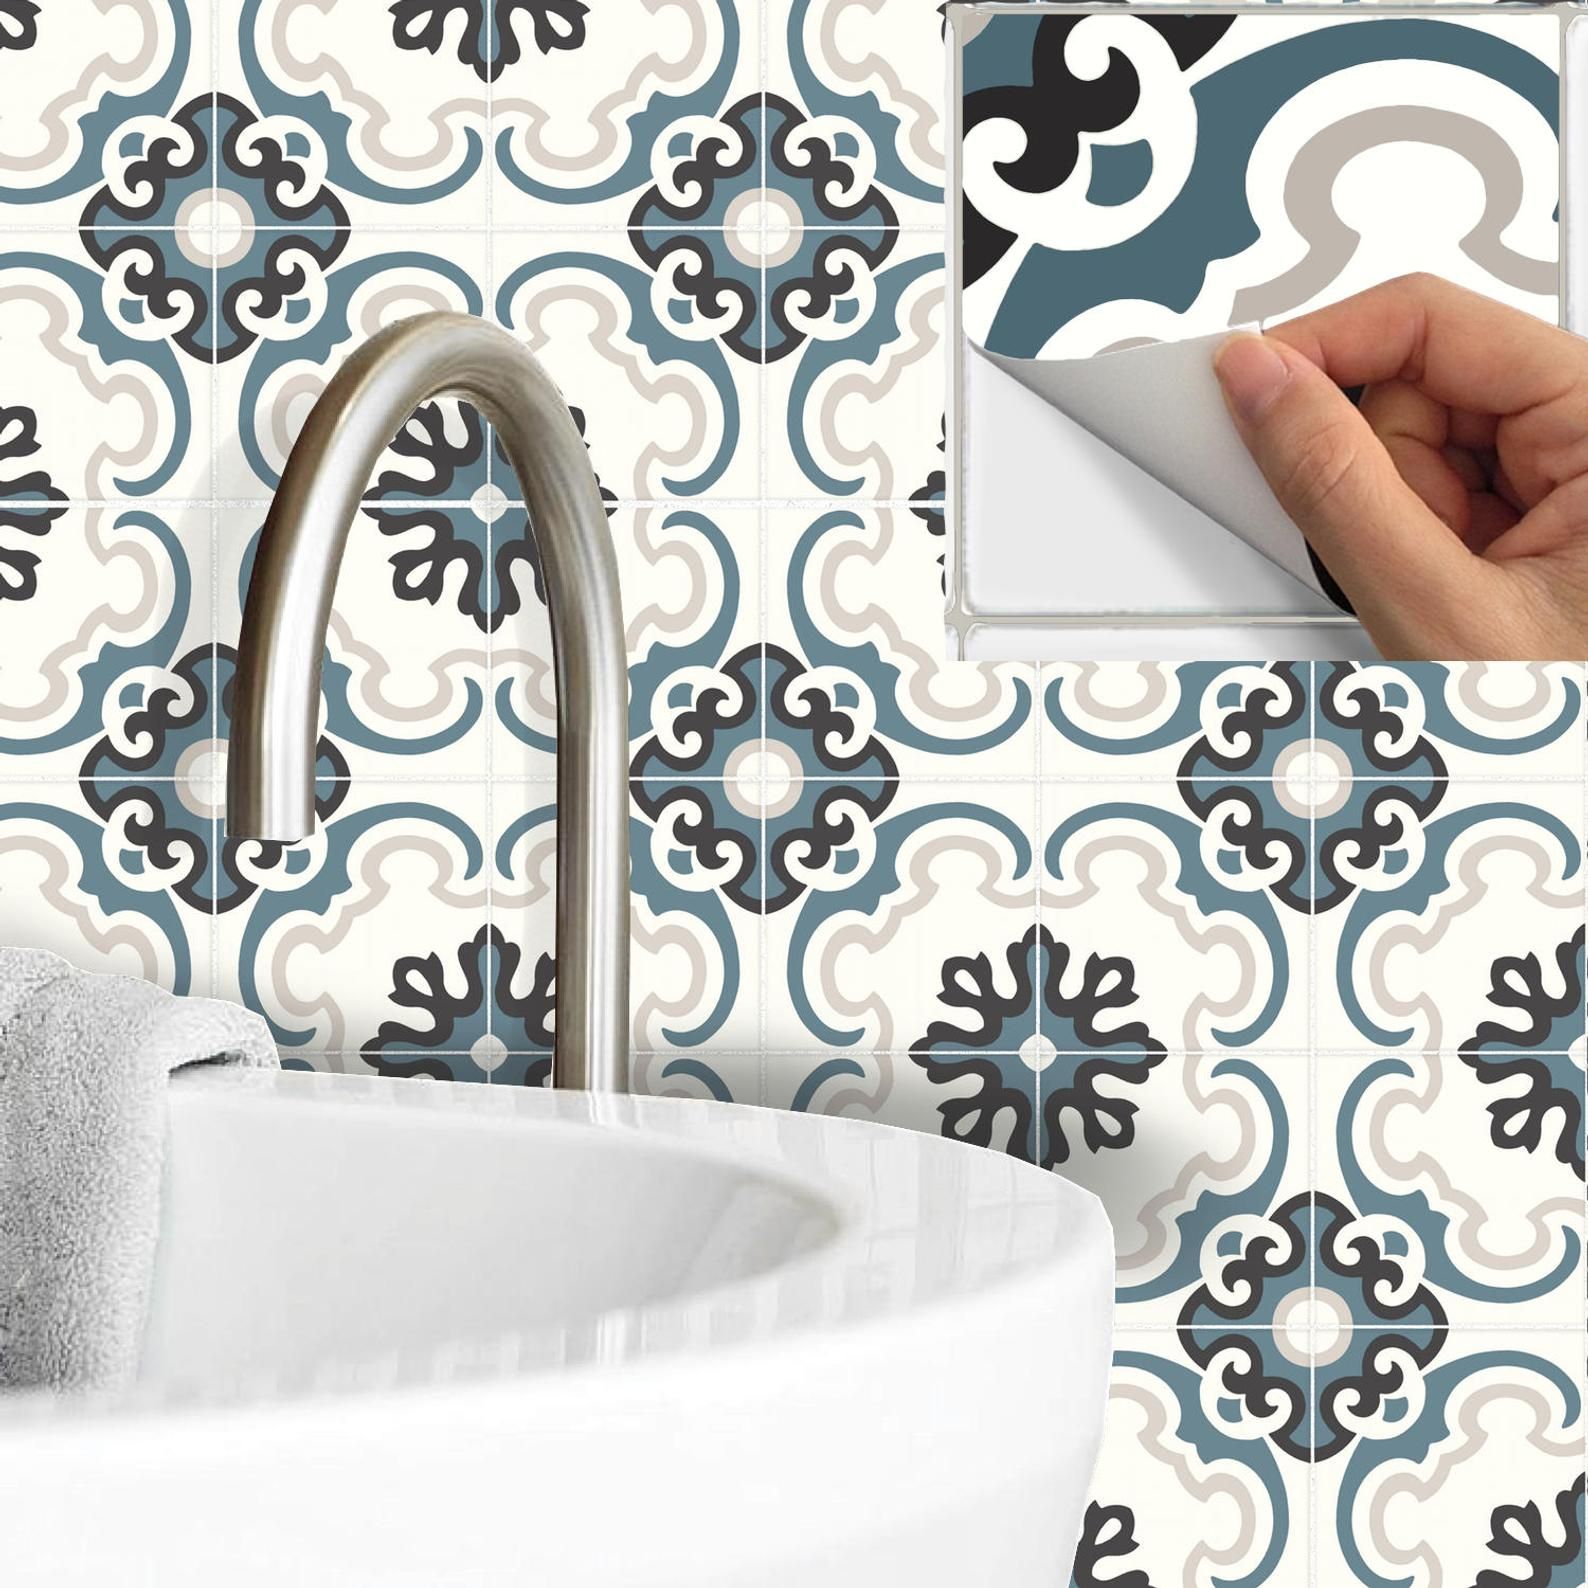 img/bathroom-tile-stickers-homebase-german.jpg